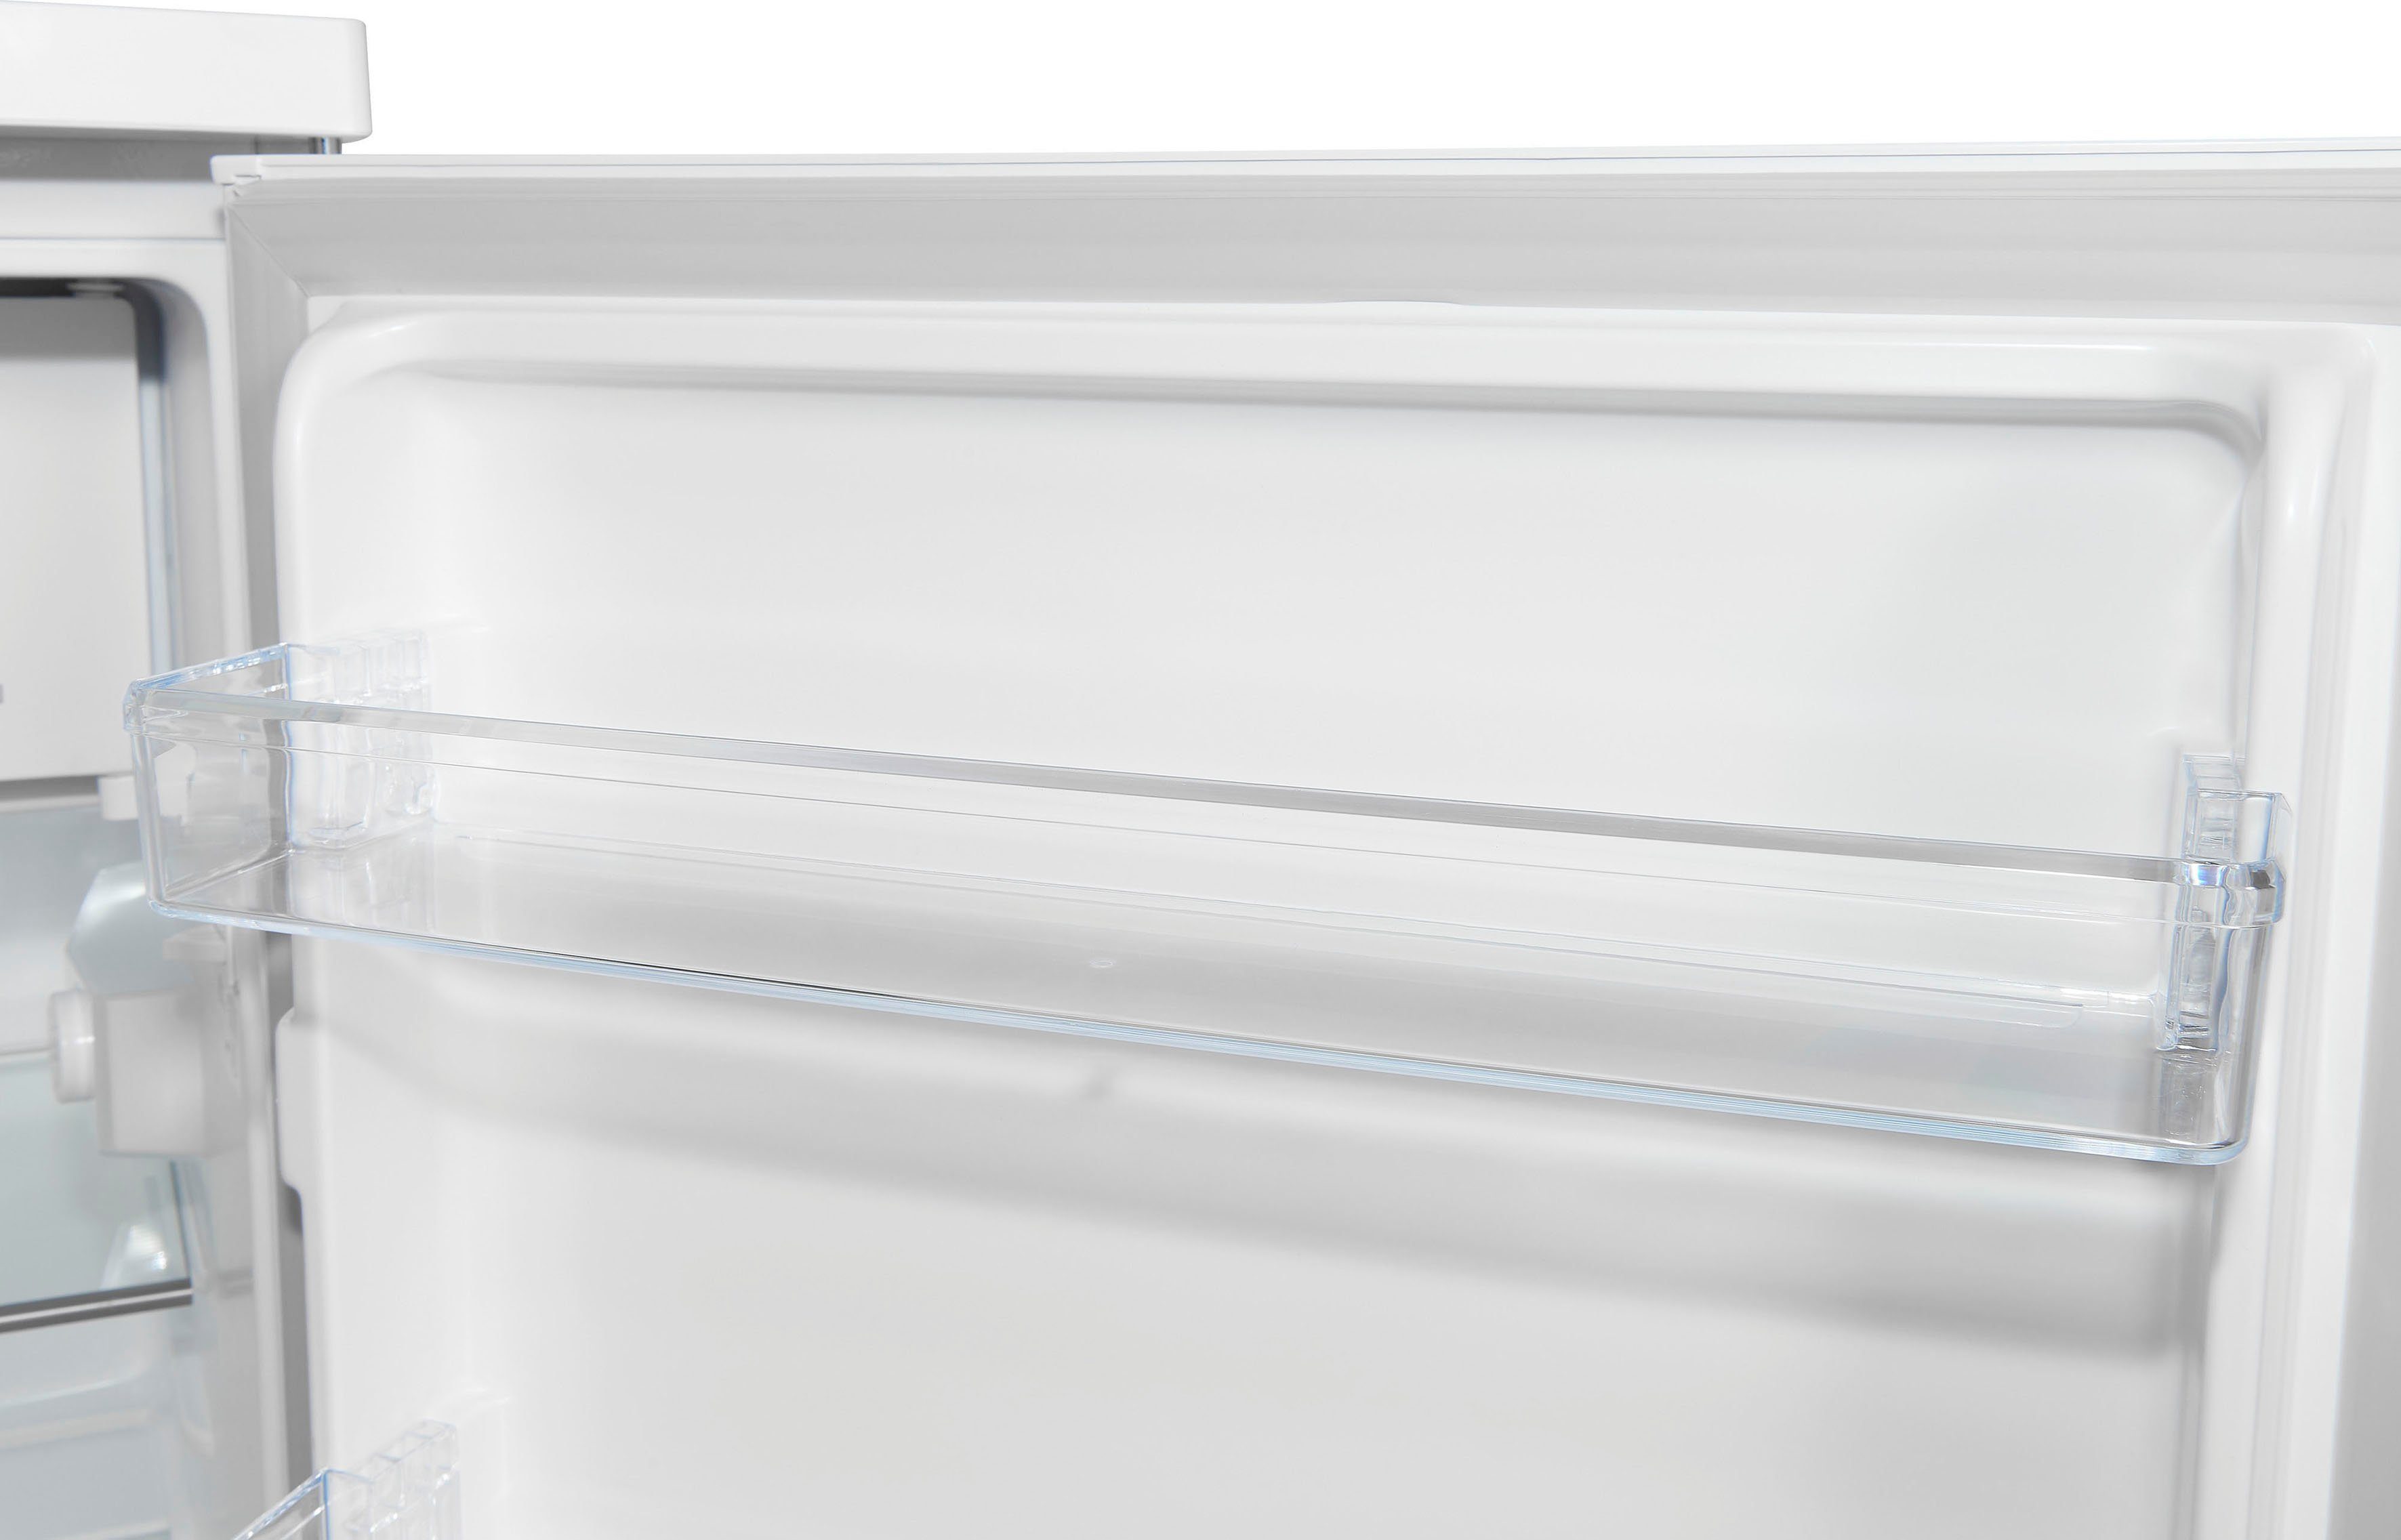 exquisit Kühlschrank KS16-4-H-010D breit weiss, weiß cm 56 cm hoch, 85